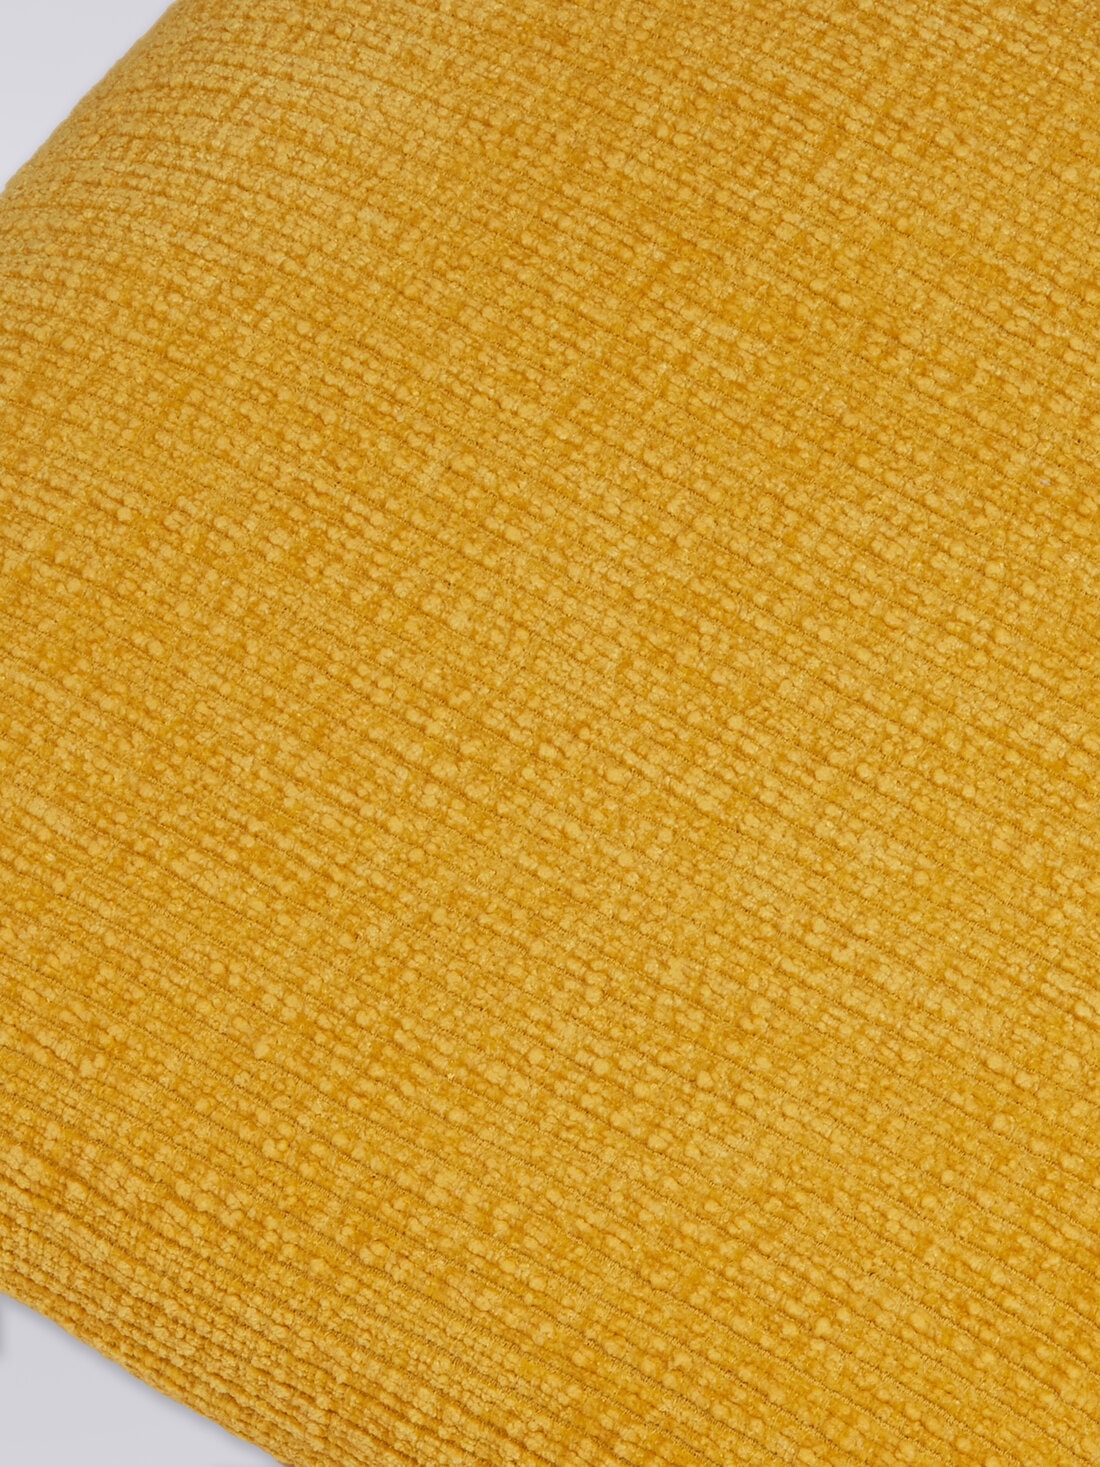 Cojín Baracoa 60x60 cm, Multicolor  - 8051275608257 - 2